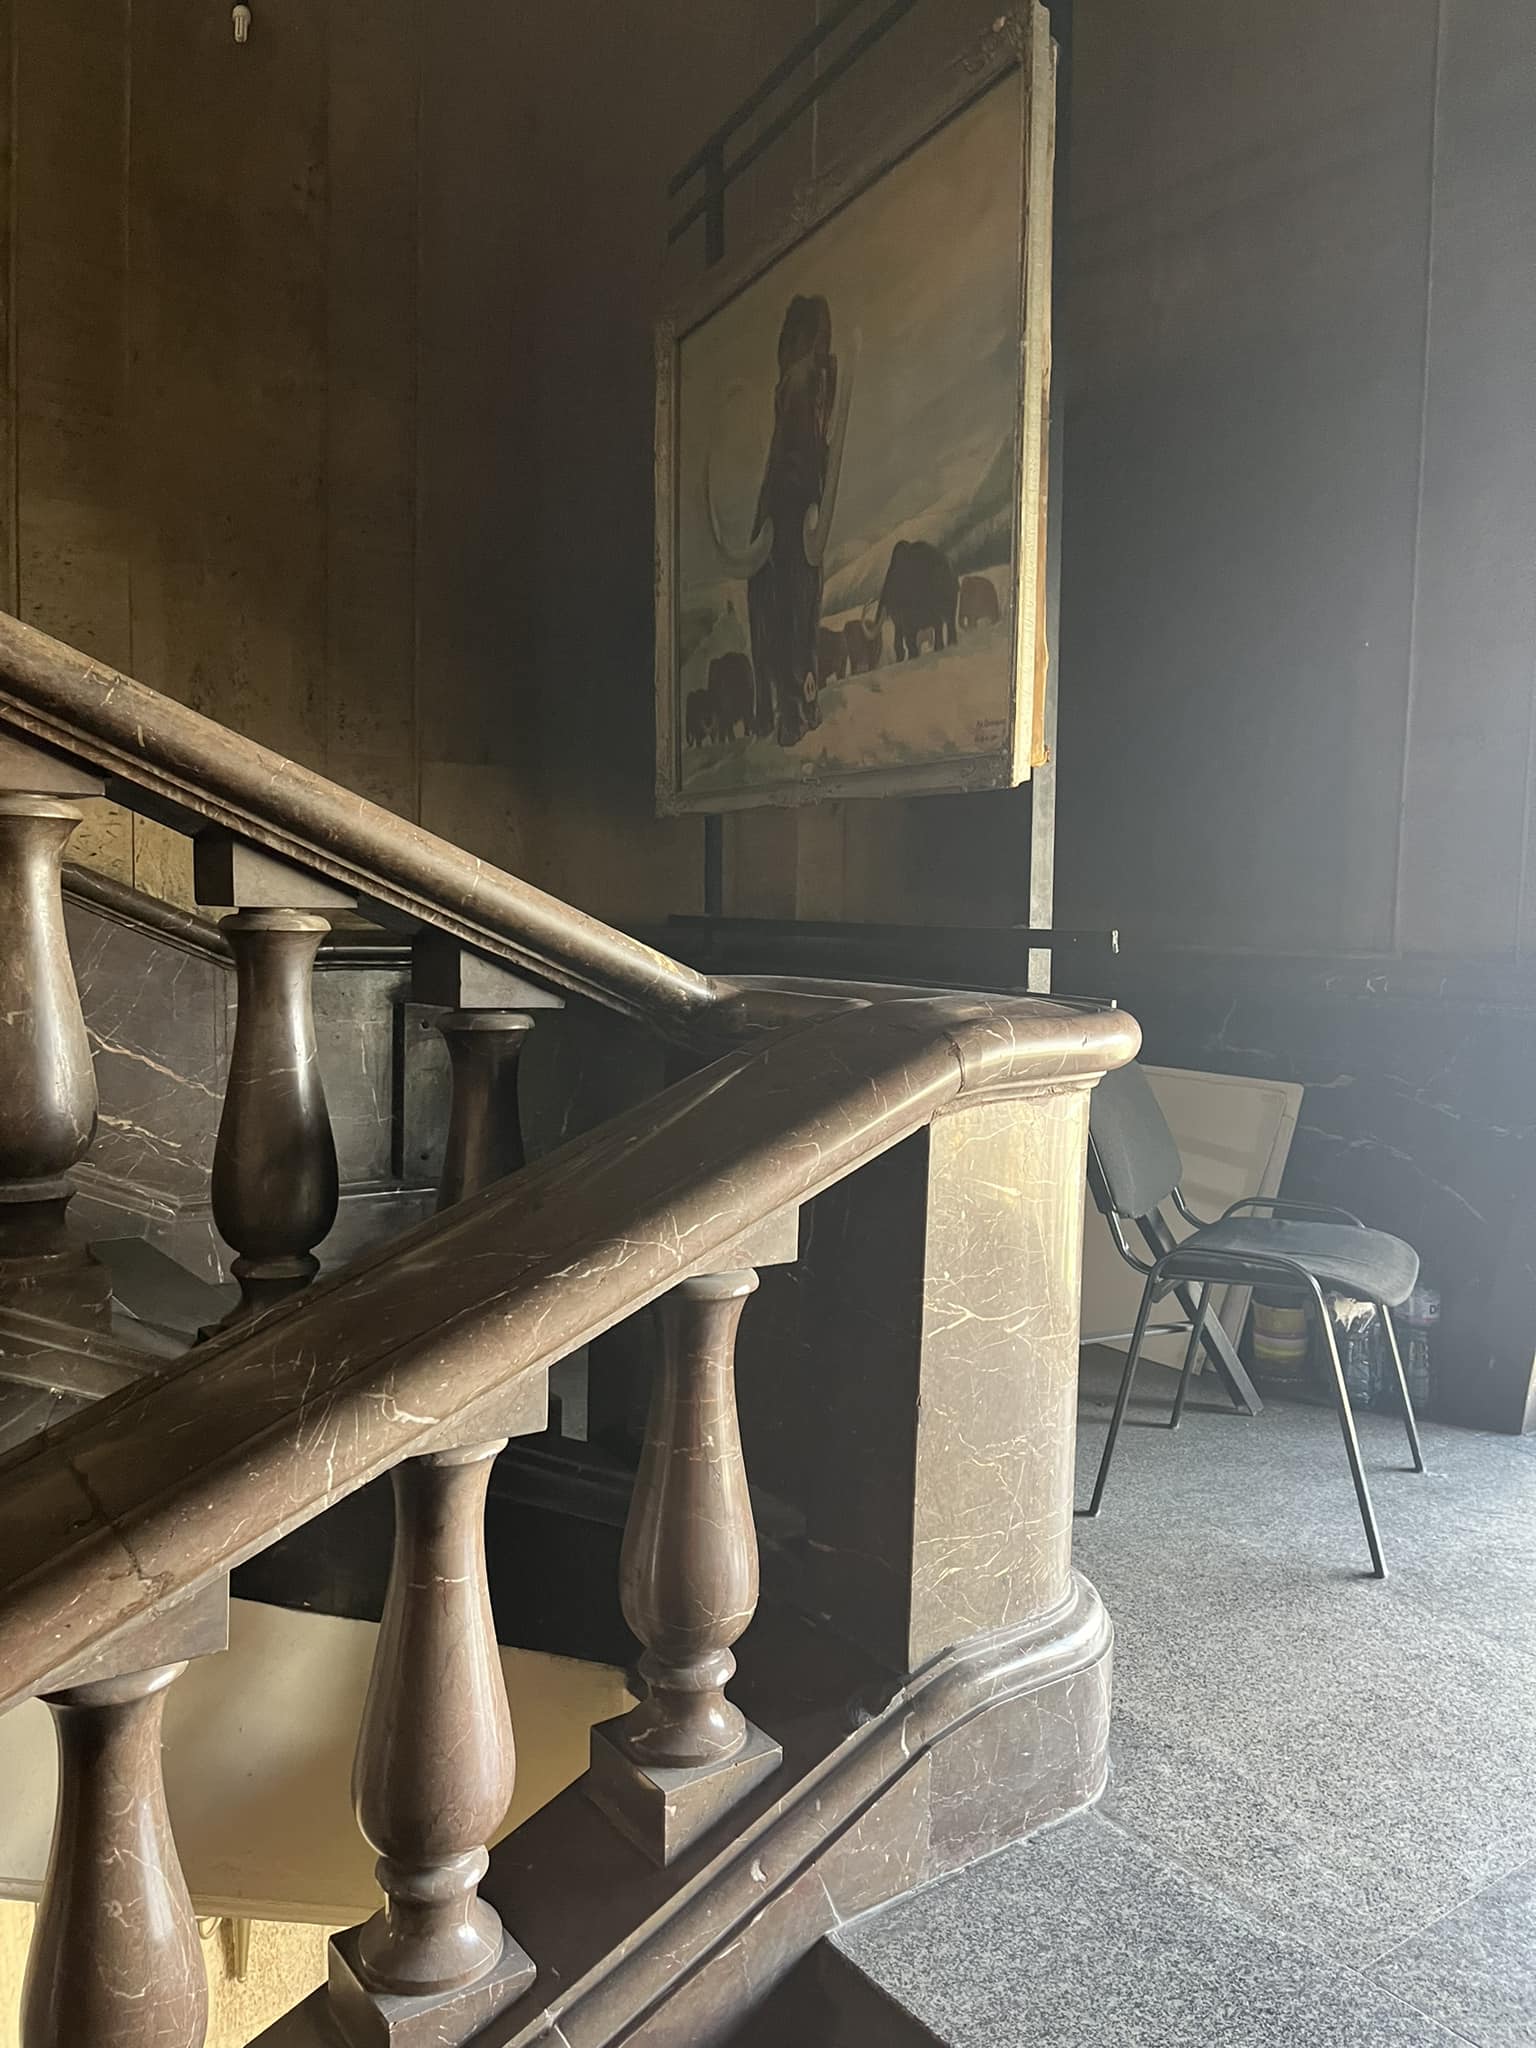 Стълбището към музея. Има стара табела, но не се вижда отникъде и струпаните столове говорят за нещо неактуално…